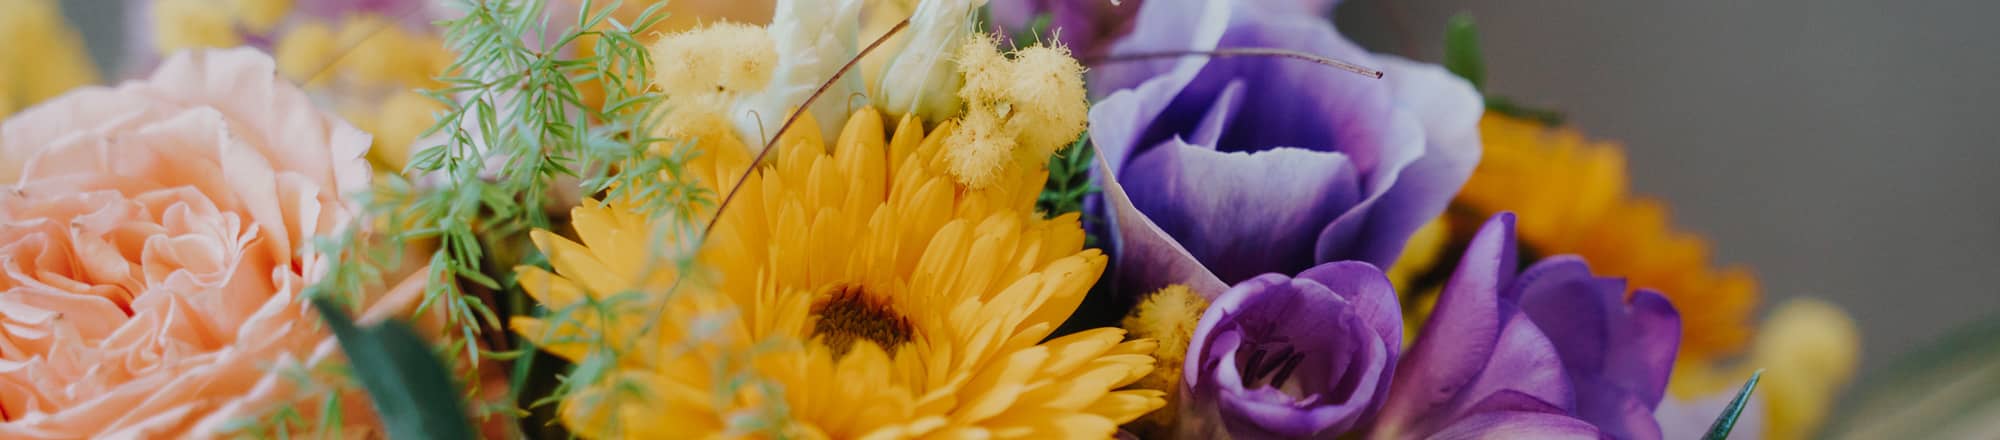 Conseils de soin pour fleurs, bouquets et arrangements